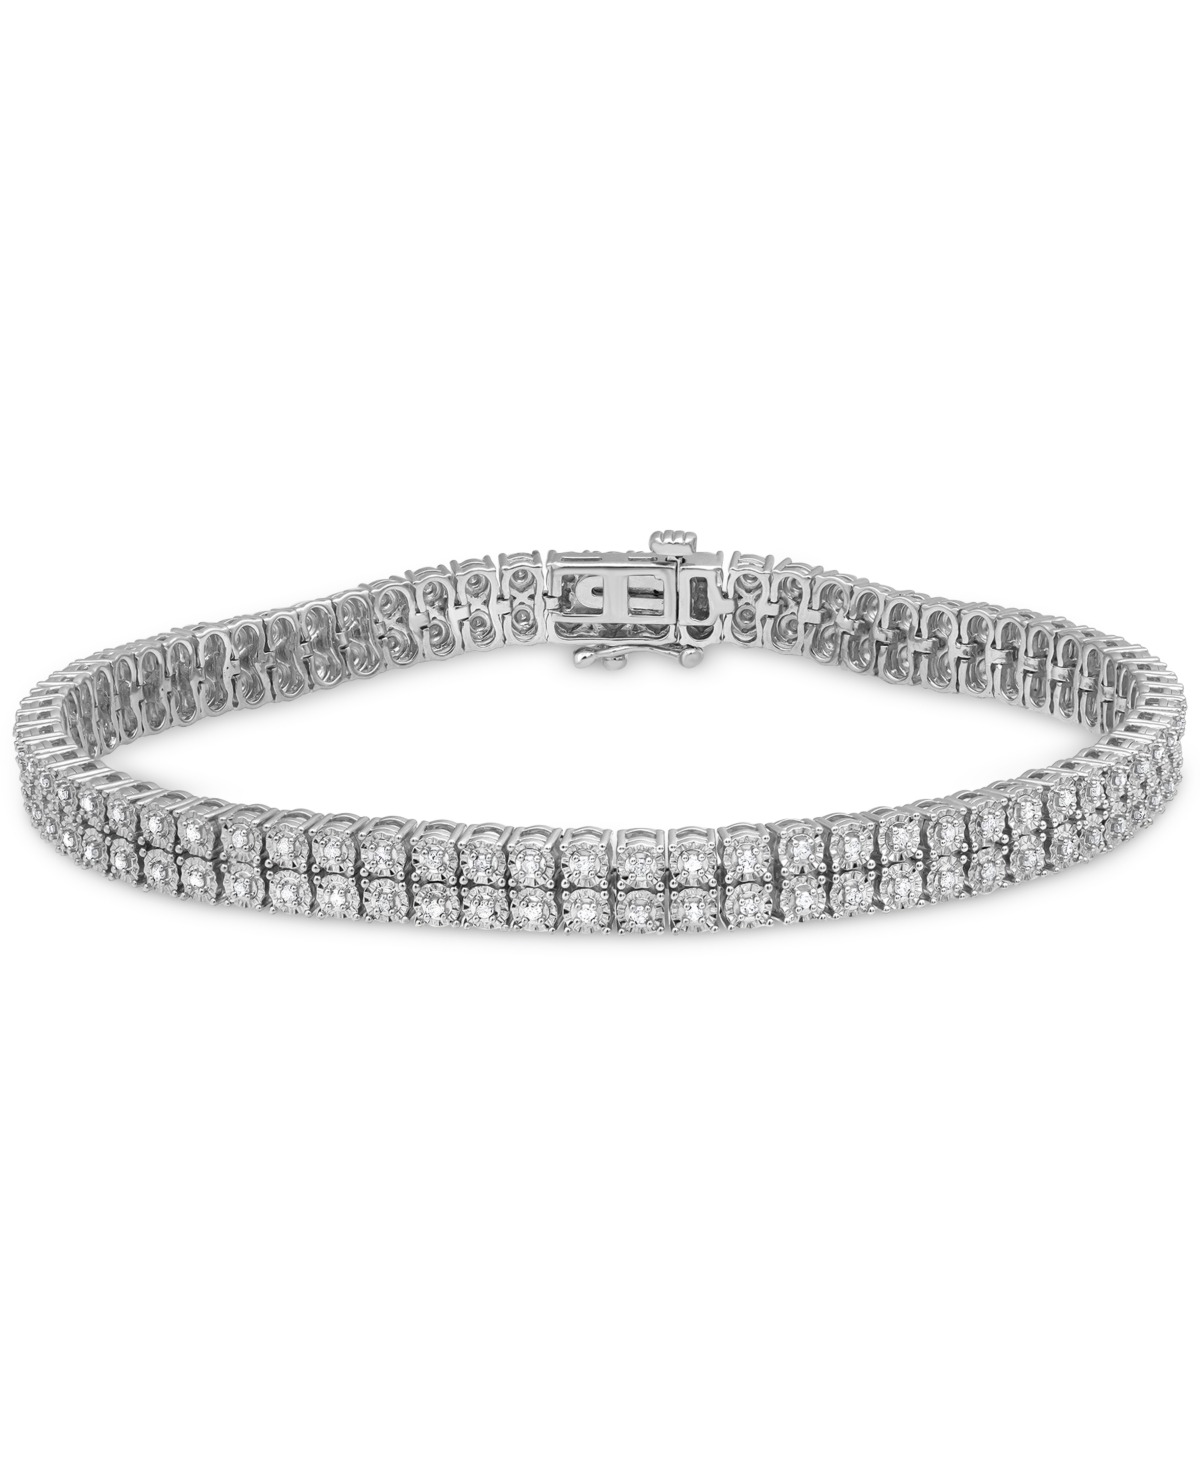 Unisex Diamond Tennis Bracelet (1 ct. t.w.) in Sterling Silver, 7-1/2" - Silver